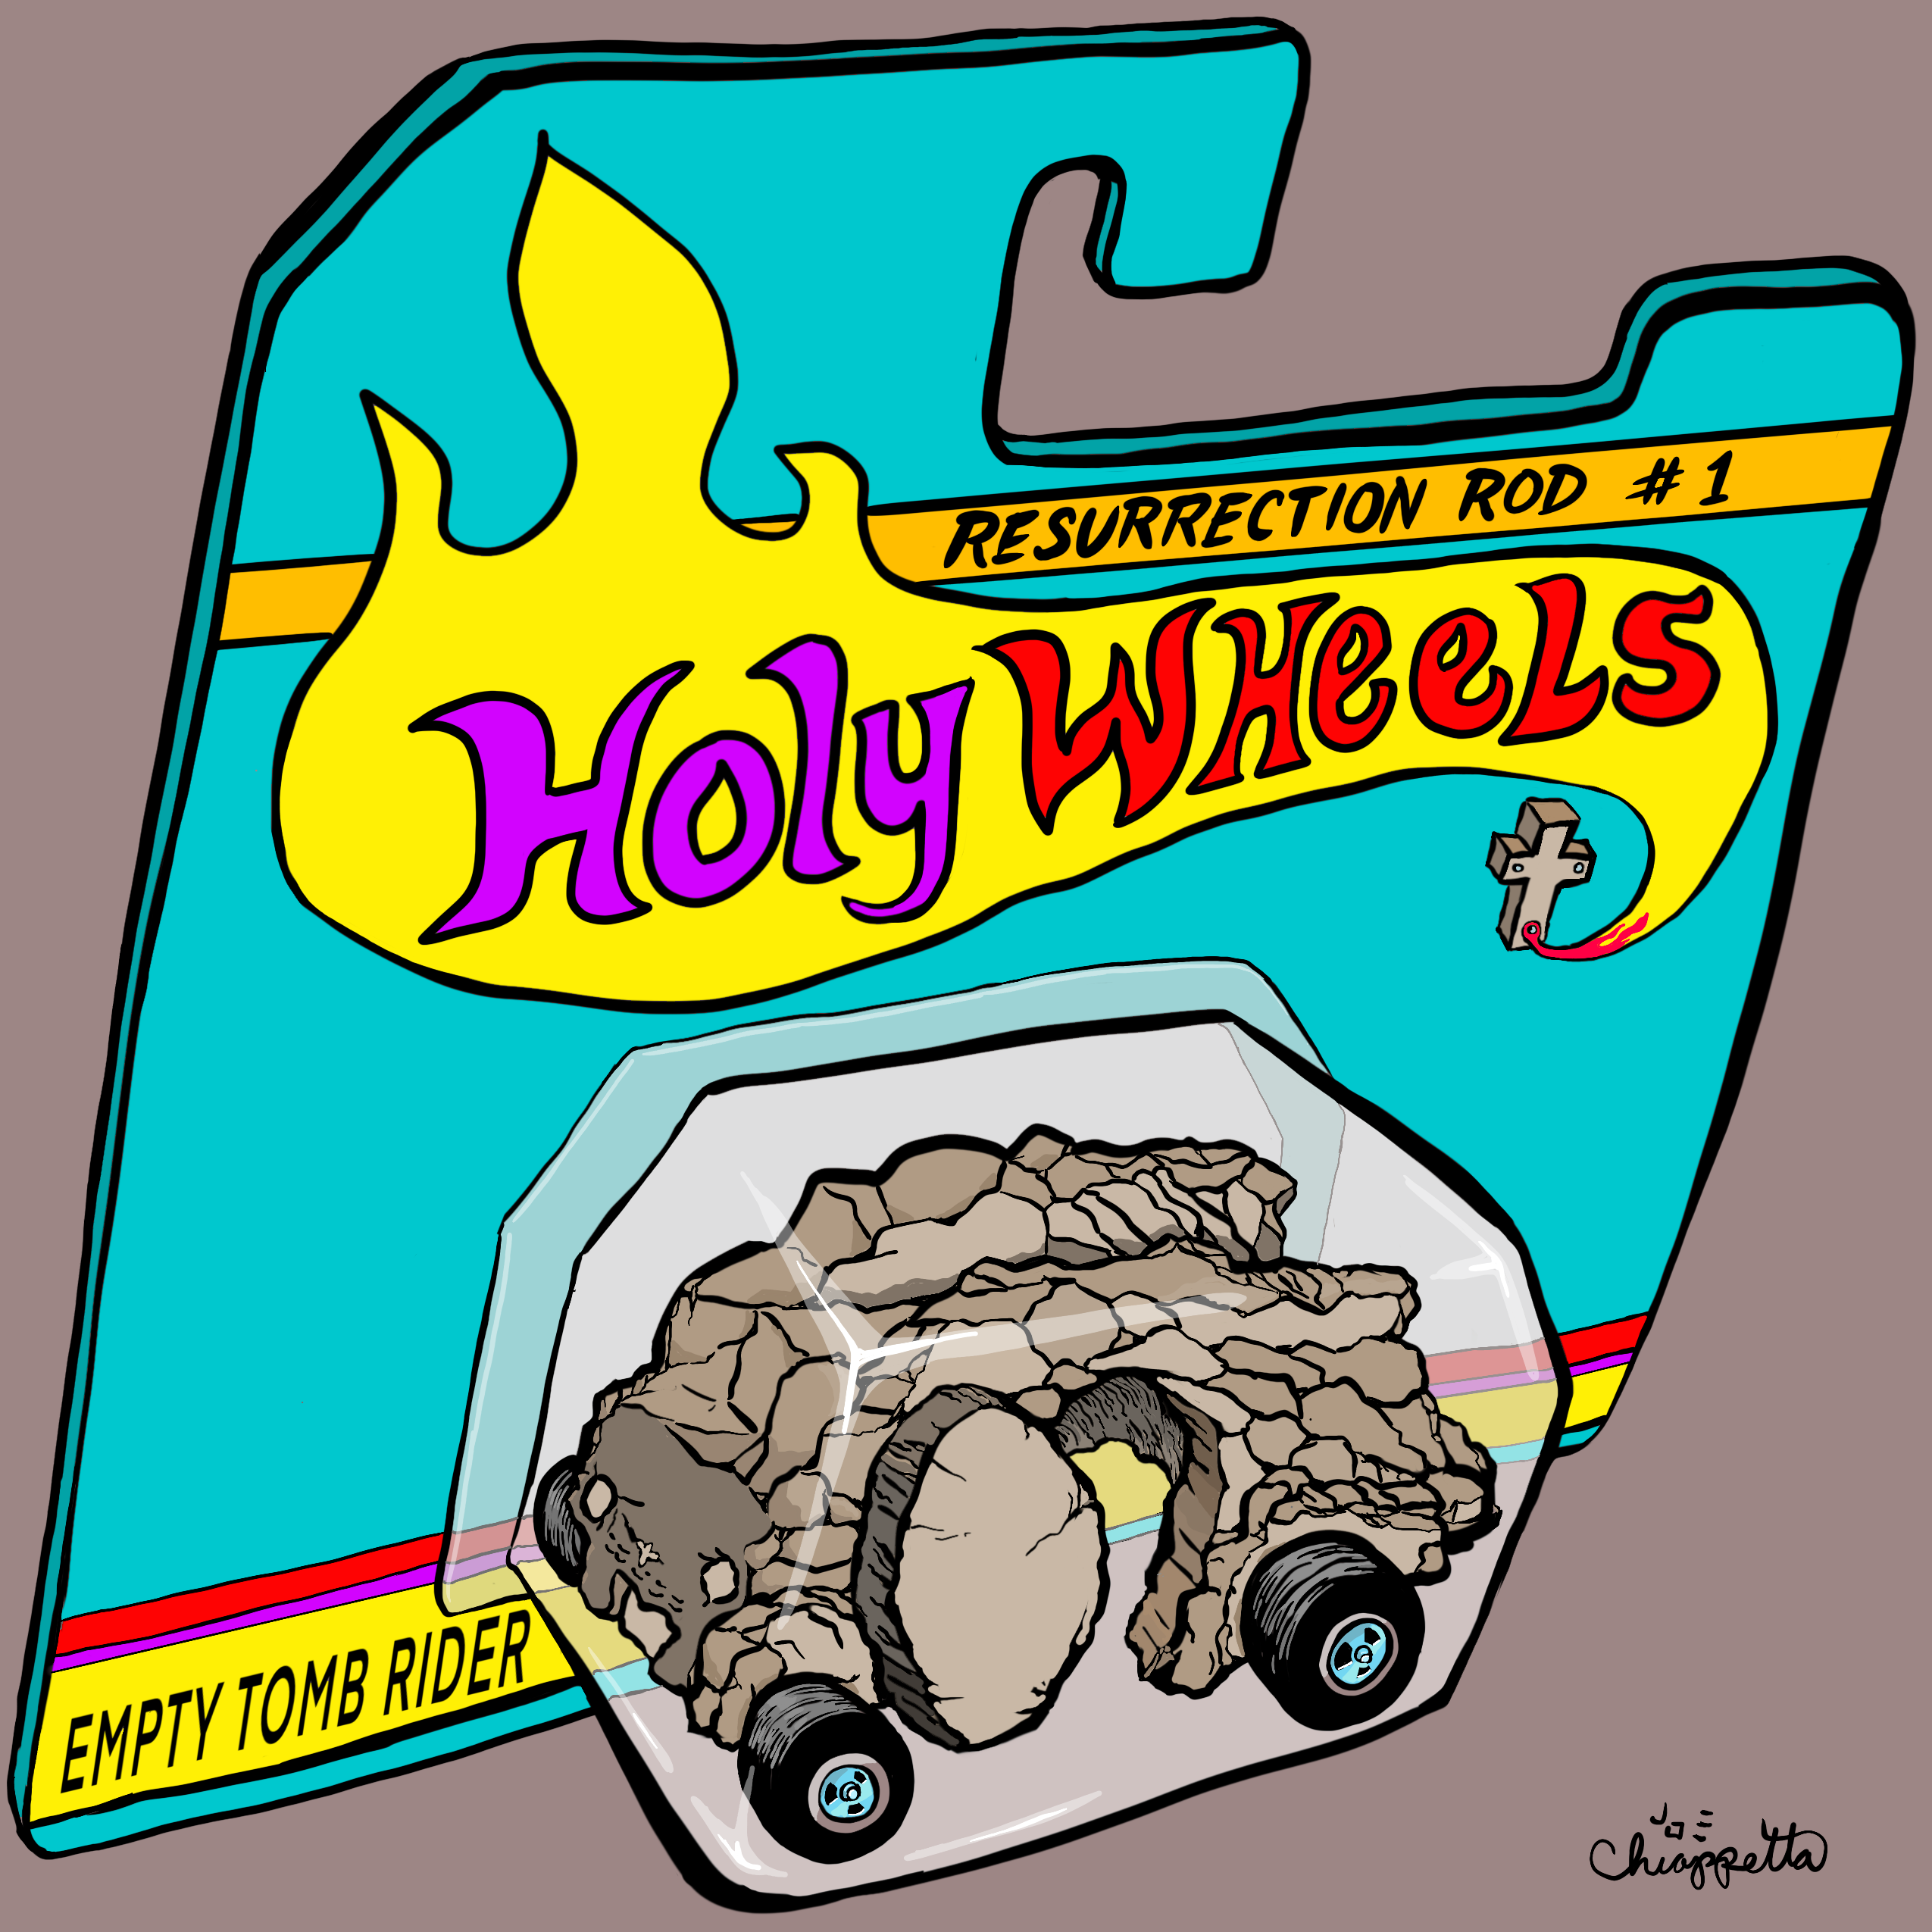 Holy Wheels is rare digital art by Joe Chiappetta